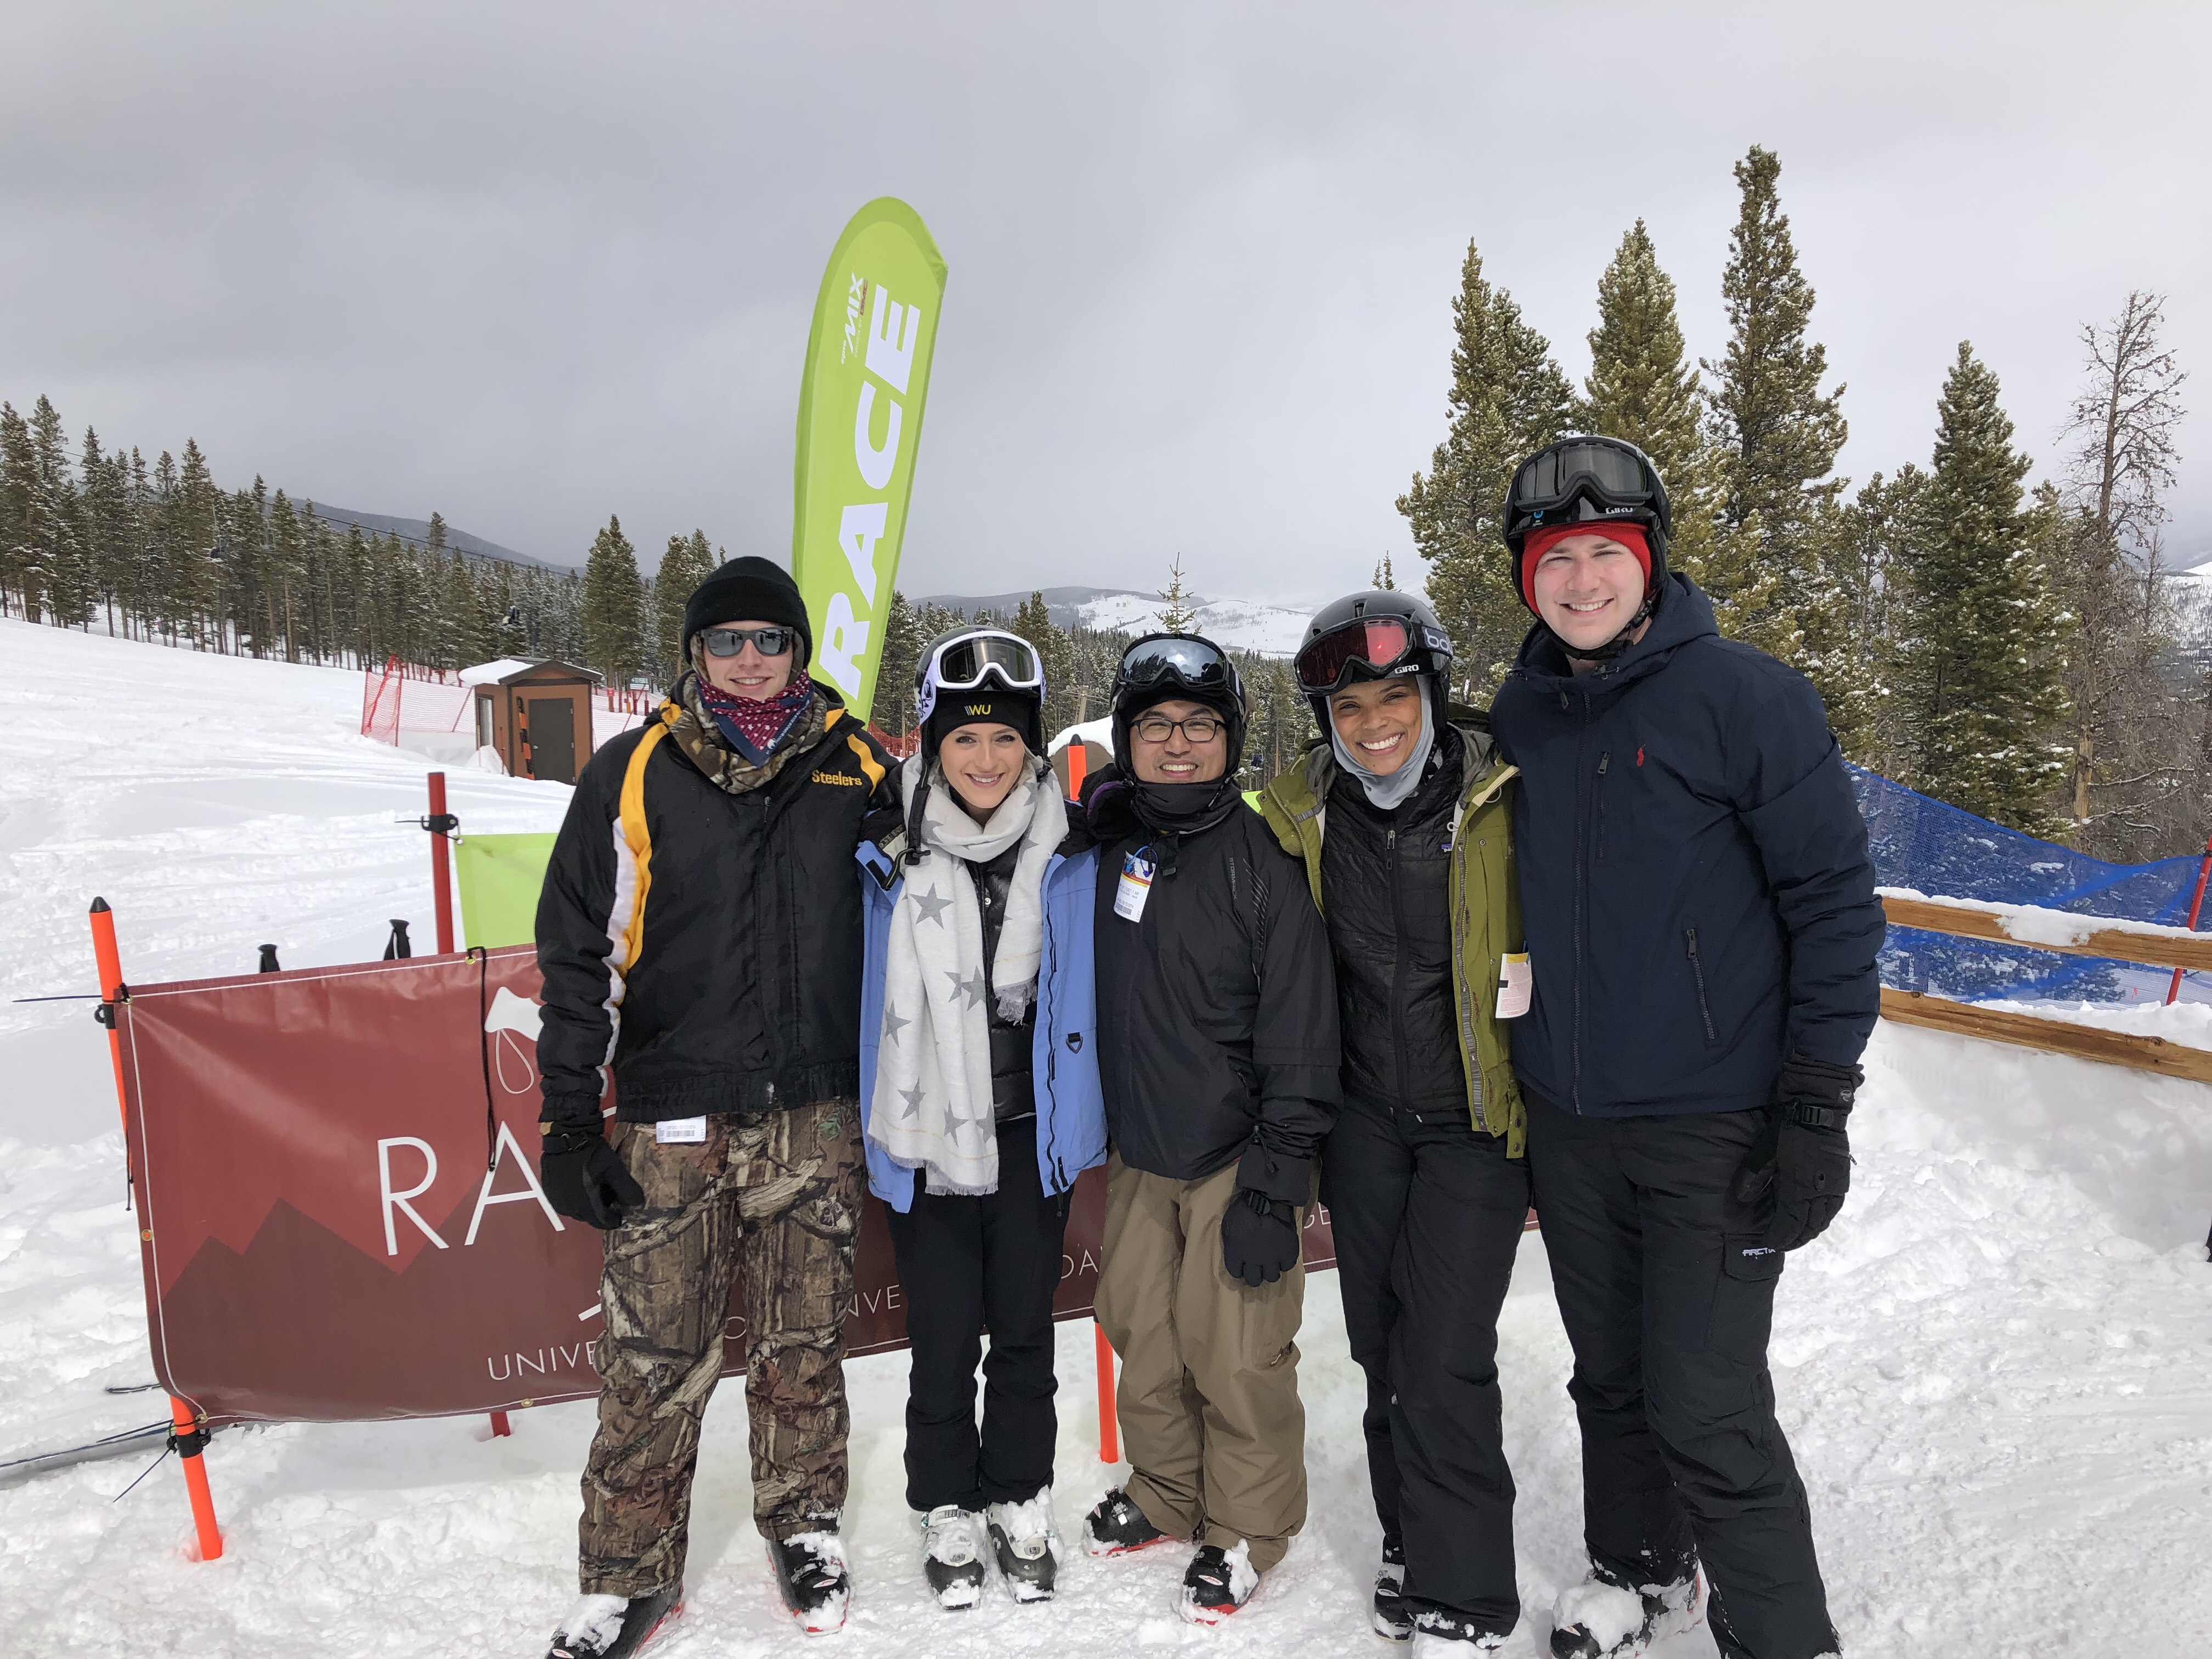 MBA case team on the ski slopes.